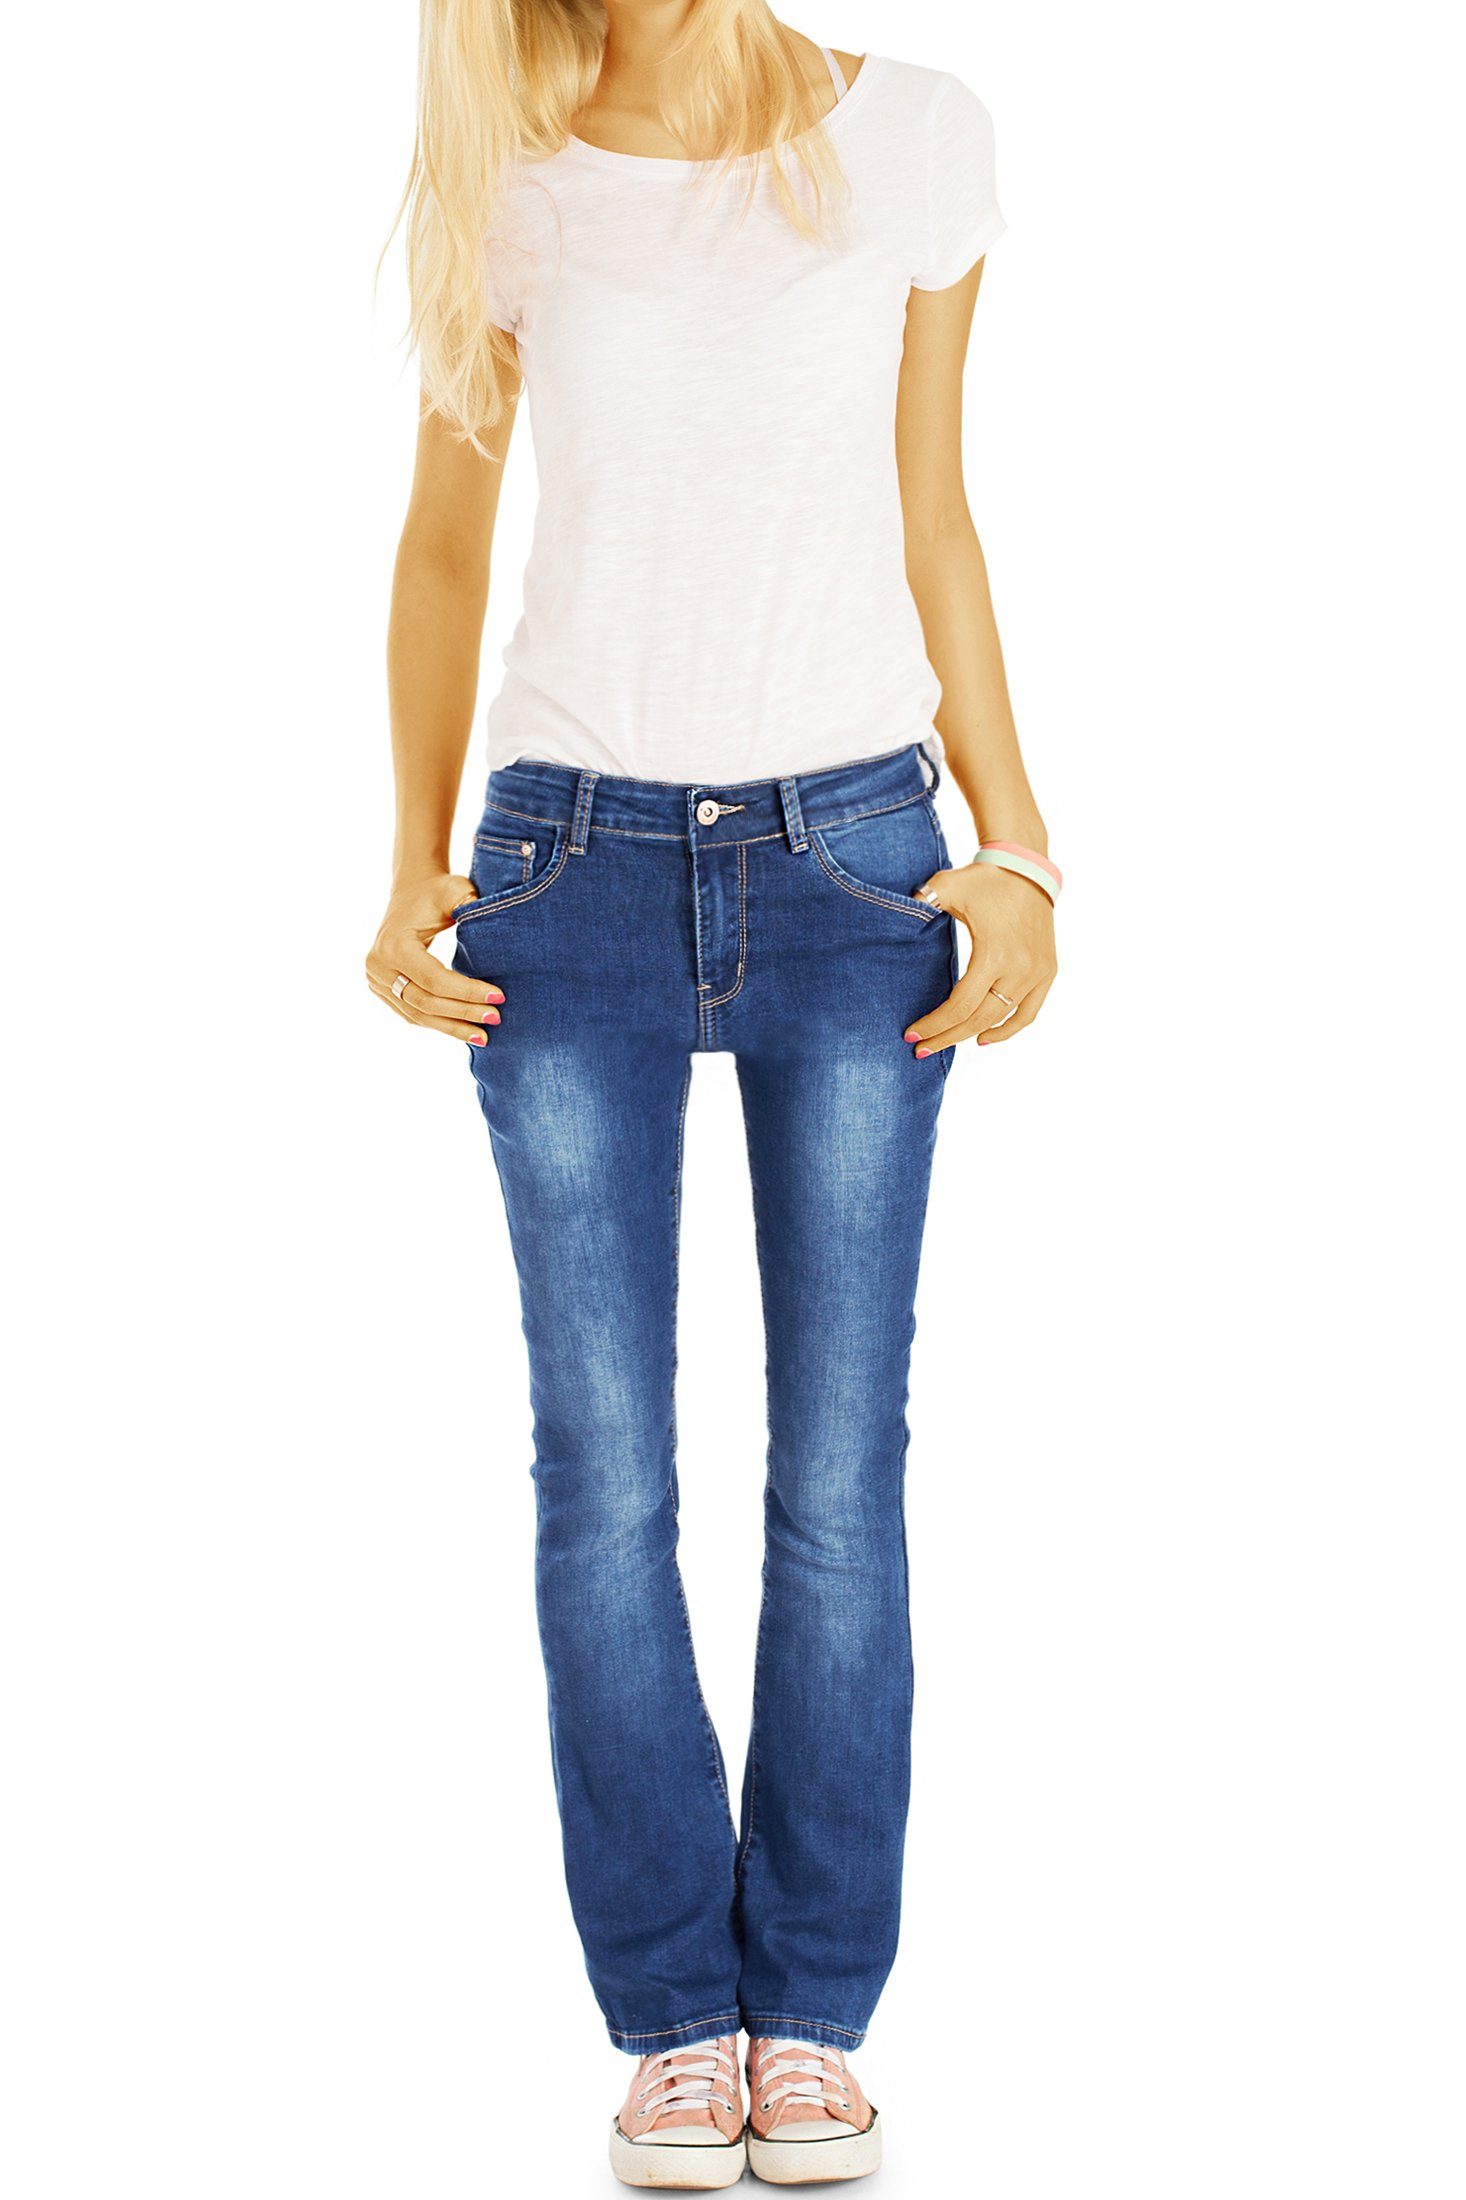 styled Schlag Bootcut j73i be - Hosen Damen - Stretch-Anteil ausgestelltes Bein 5-Pocket-Style, - Bootcut-Jeans Jeans mit Jeans